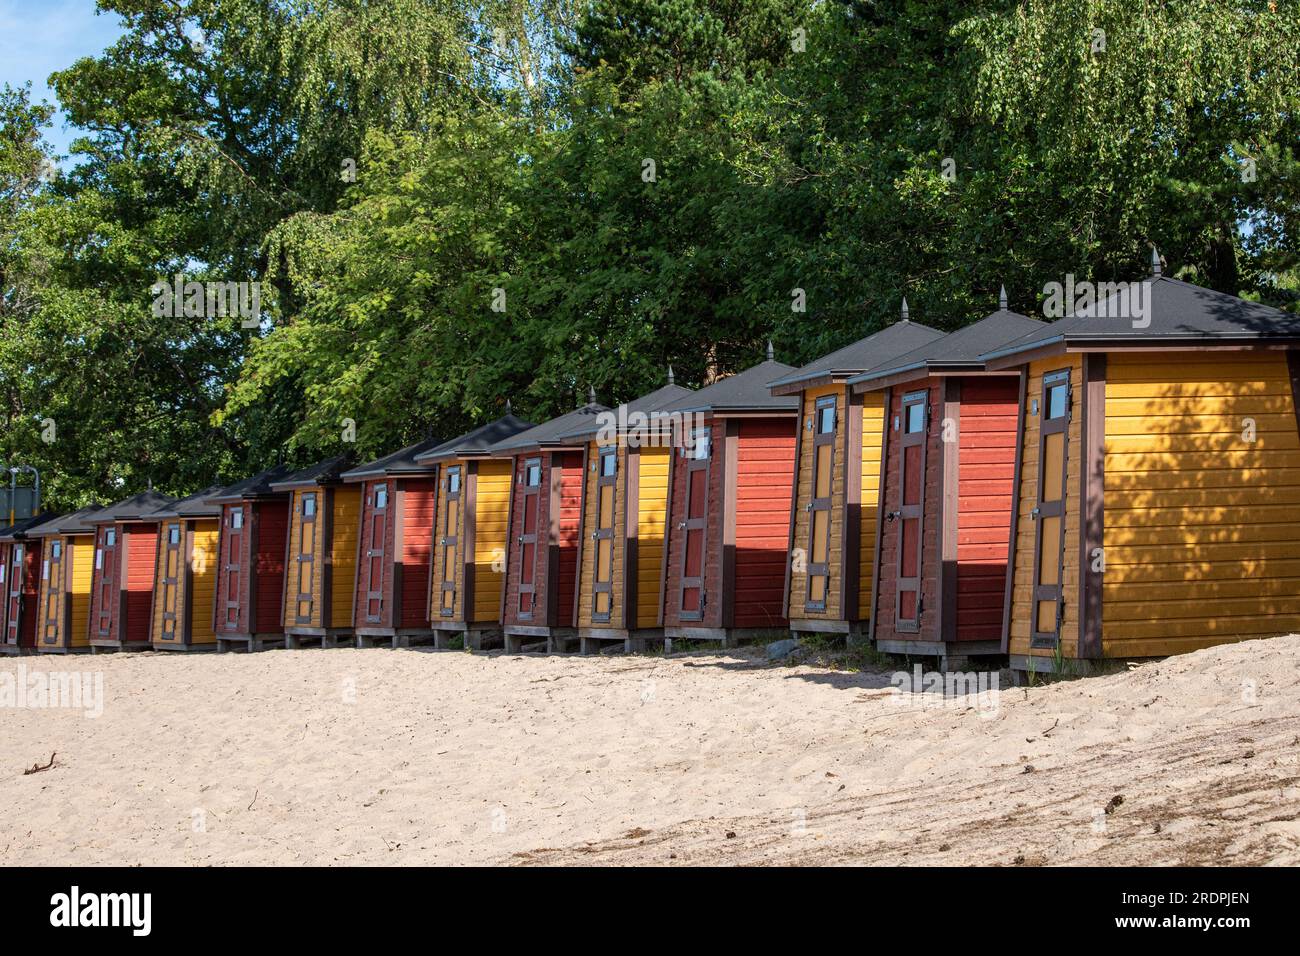 Longue ligne de vestiaires de plage ou cabanes de plage ou cabines de plage par une journée ensoleillée d'été sur la plage de l'île de Pihlajasaari à Helsinki, Finlande Banque D'Images